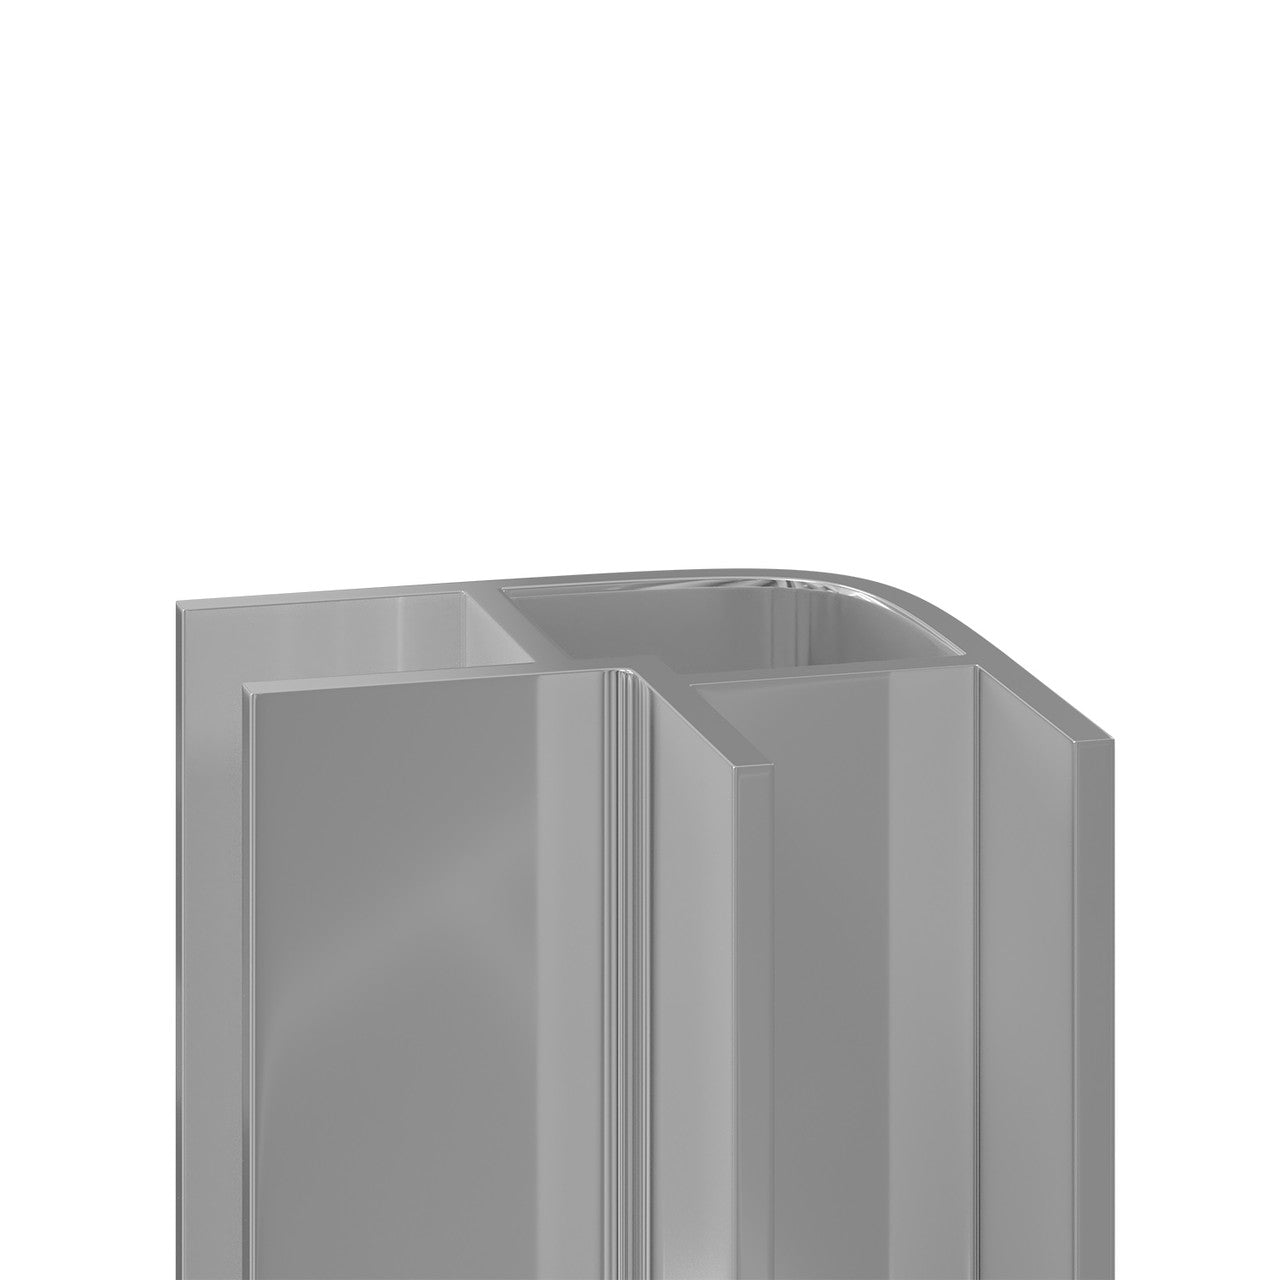 Aluminium External Corner Trim